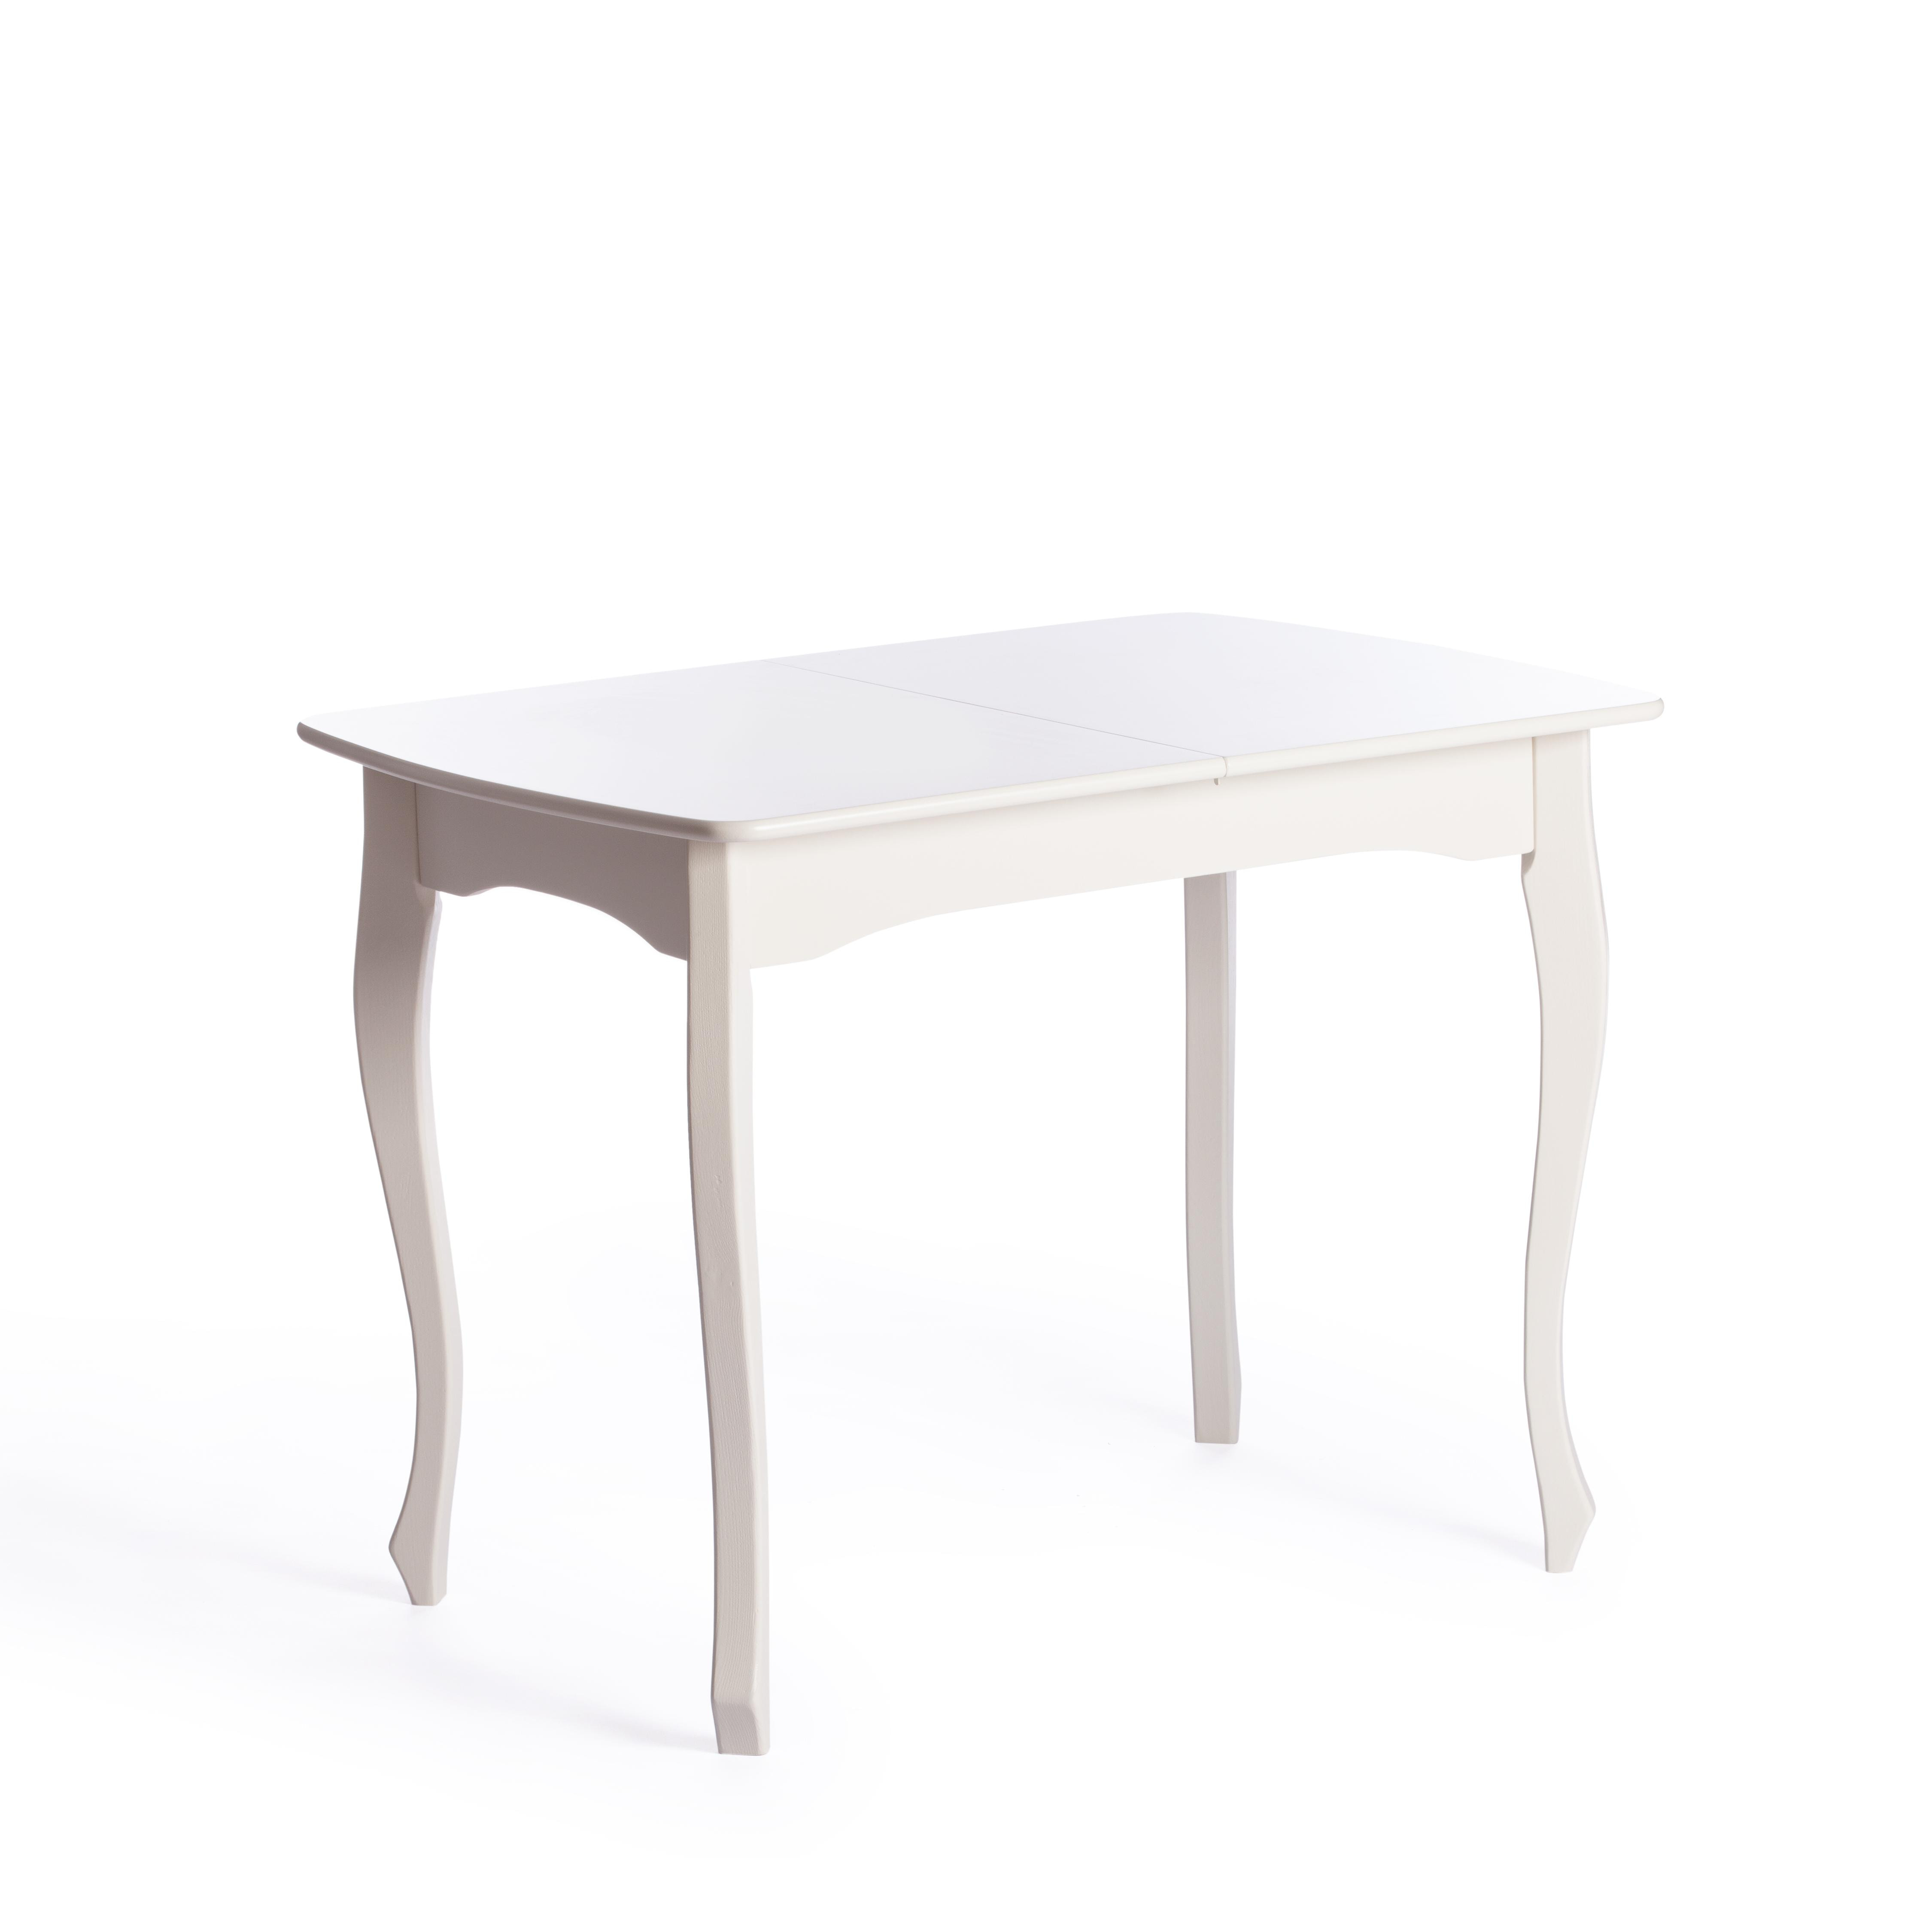 Стол CATERINA PROVENCE бук, мдф, 100+30x70x75 см, Ivory white